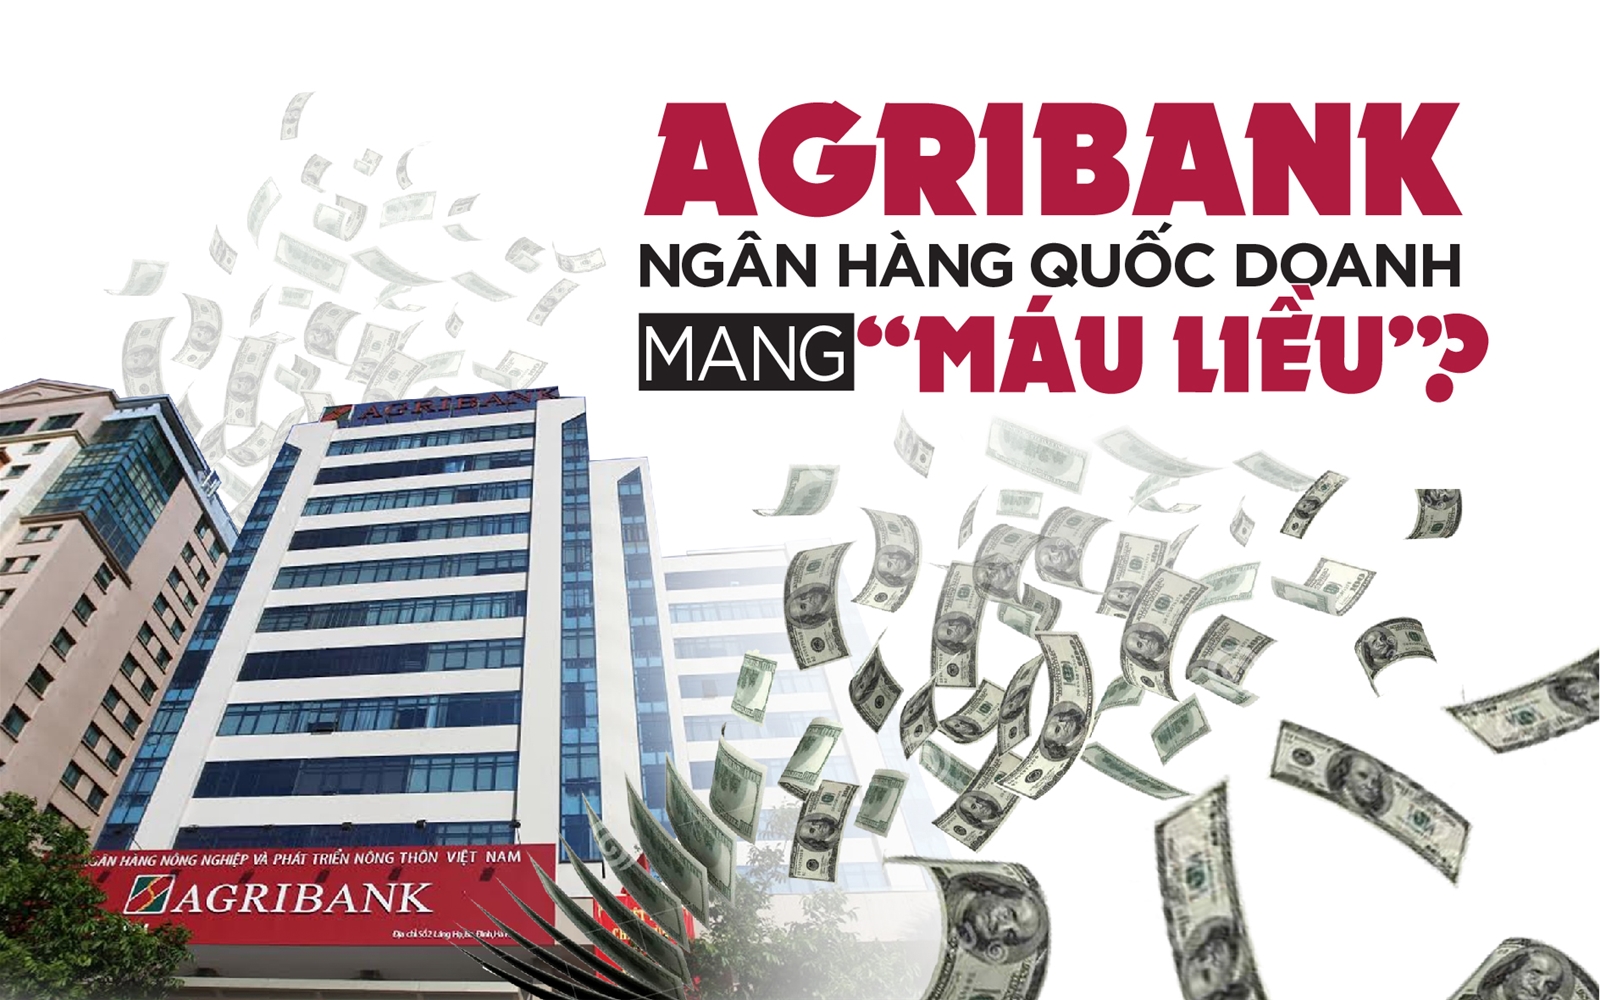 Agribank "câu giờ" cổ phần hoá vì đất và nợ xấu?